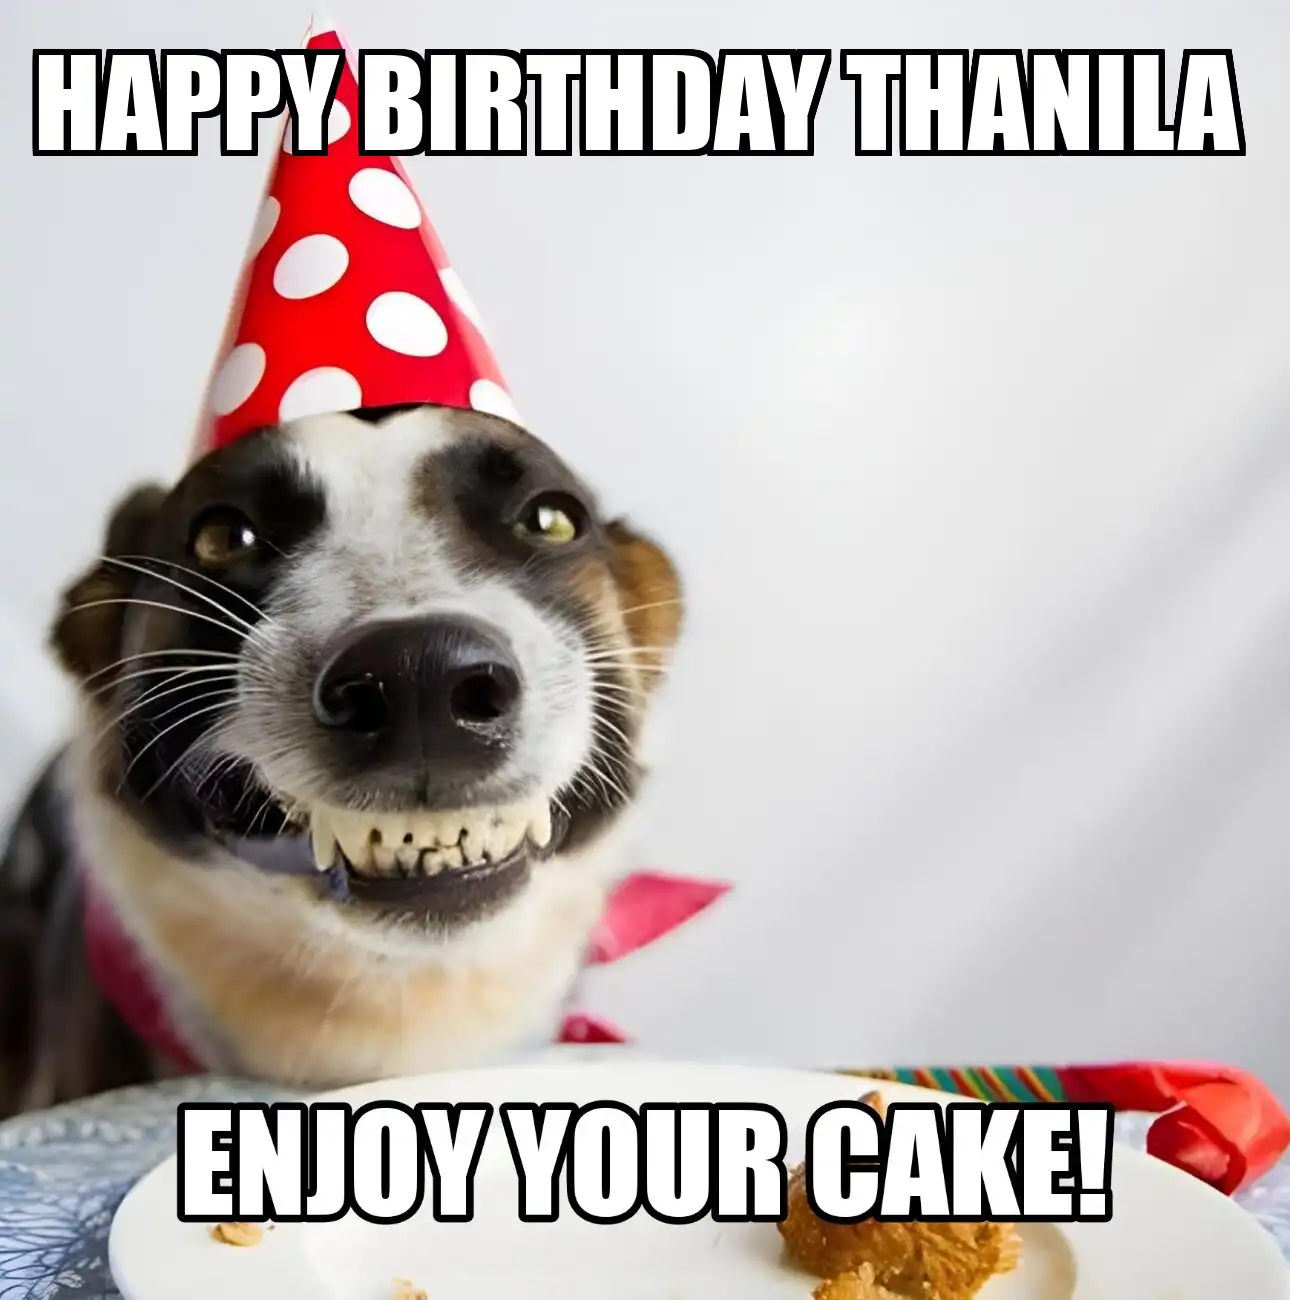 Happy Birthday Thanila Enjoy Your Cake Dog Meme